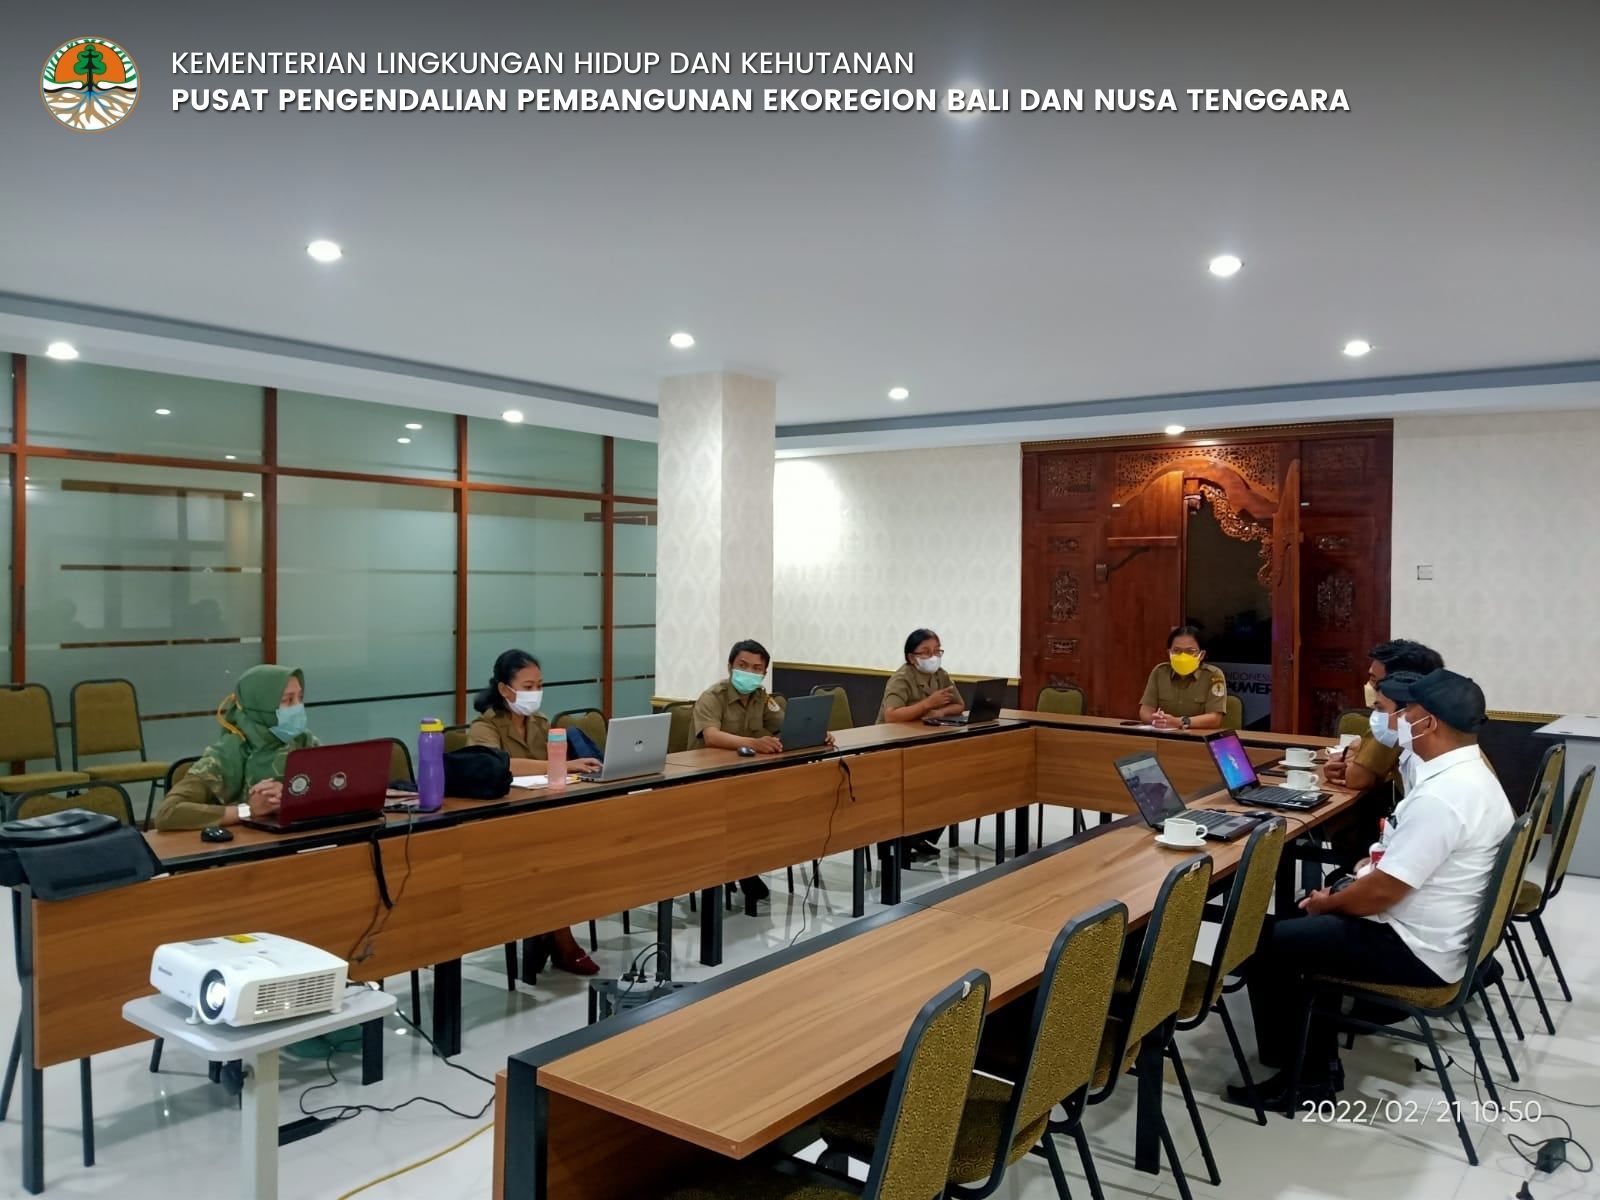 Pelatihan Pemetaan RTH yang Diikuti Oleh DLH Kabupaten Tabanan